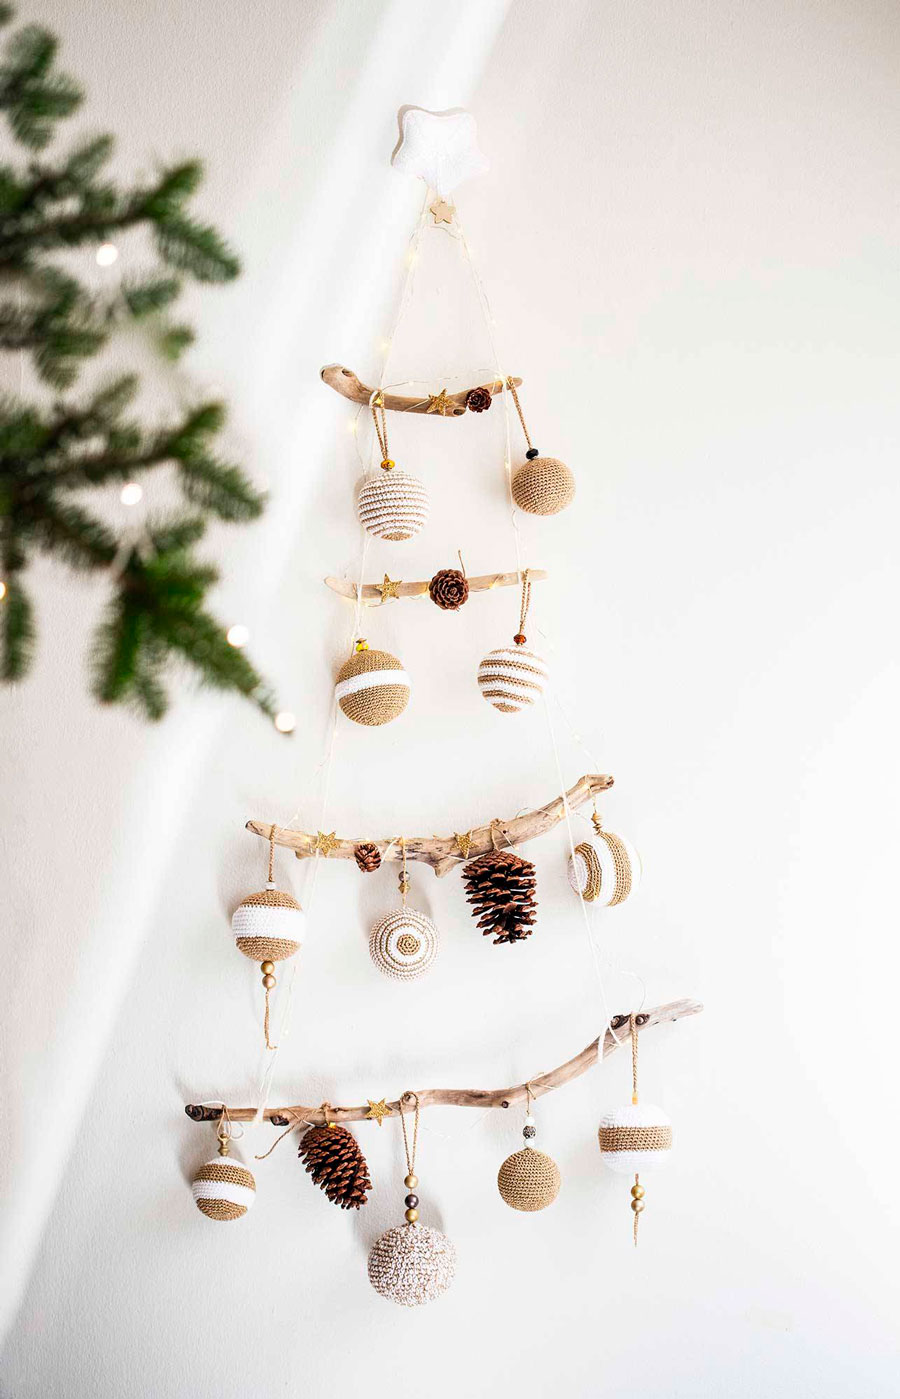 Adorno navideño en forma de árbol, creada con ramas, hilos y esferas de navidad beige y blancos, colgado en la pared.